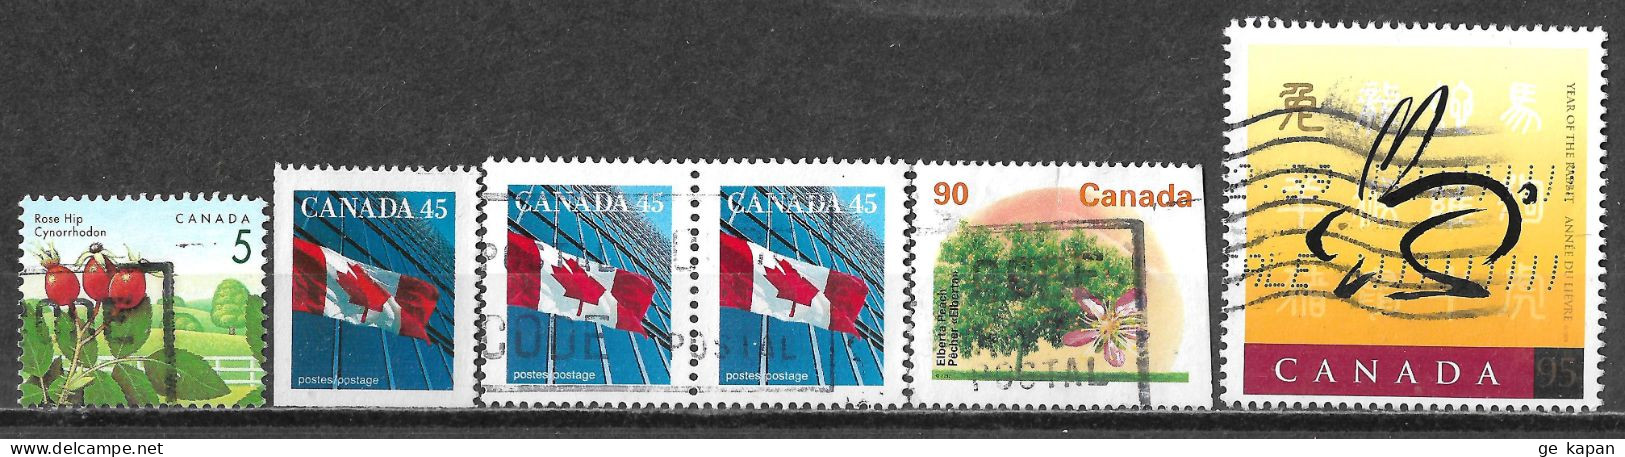 1991,1999 CANADA Set Of 6 USED Stamps (Scott # 1352,1361,1374,1768) CV $3.50 - Gebruikt